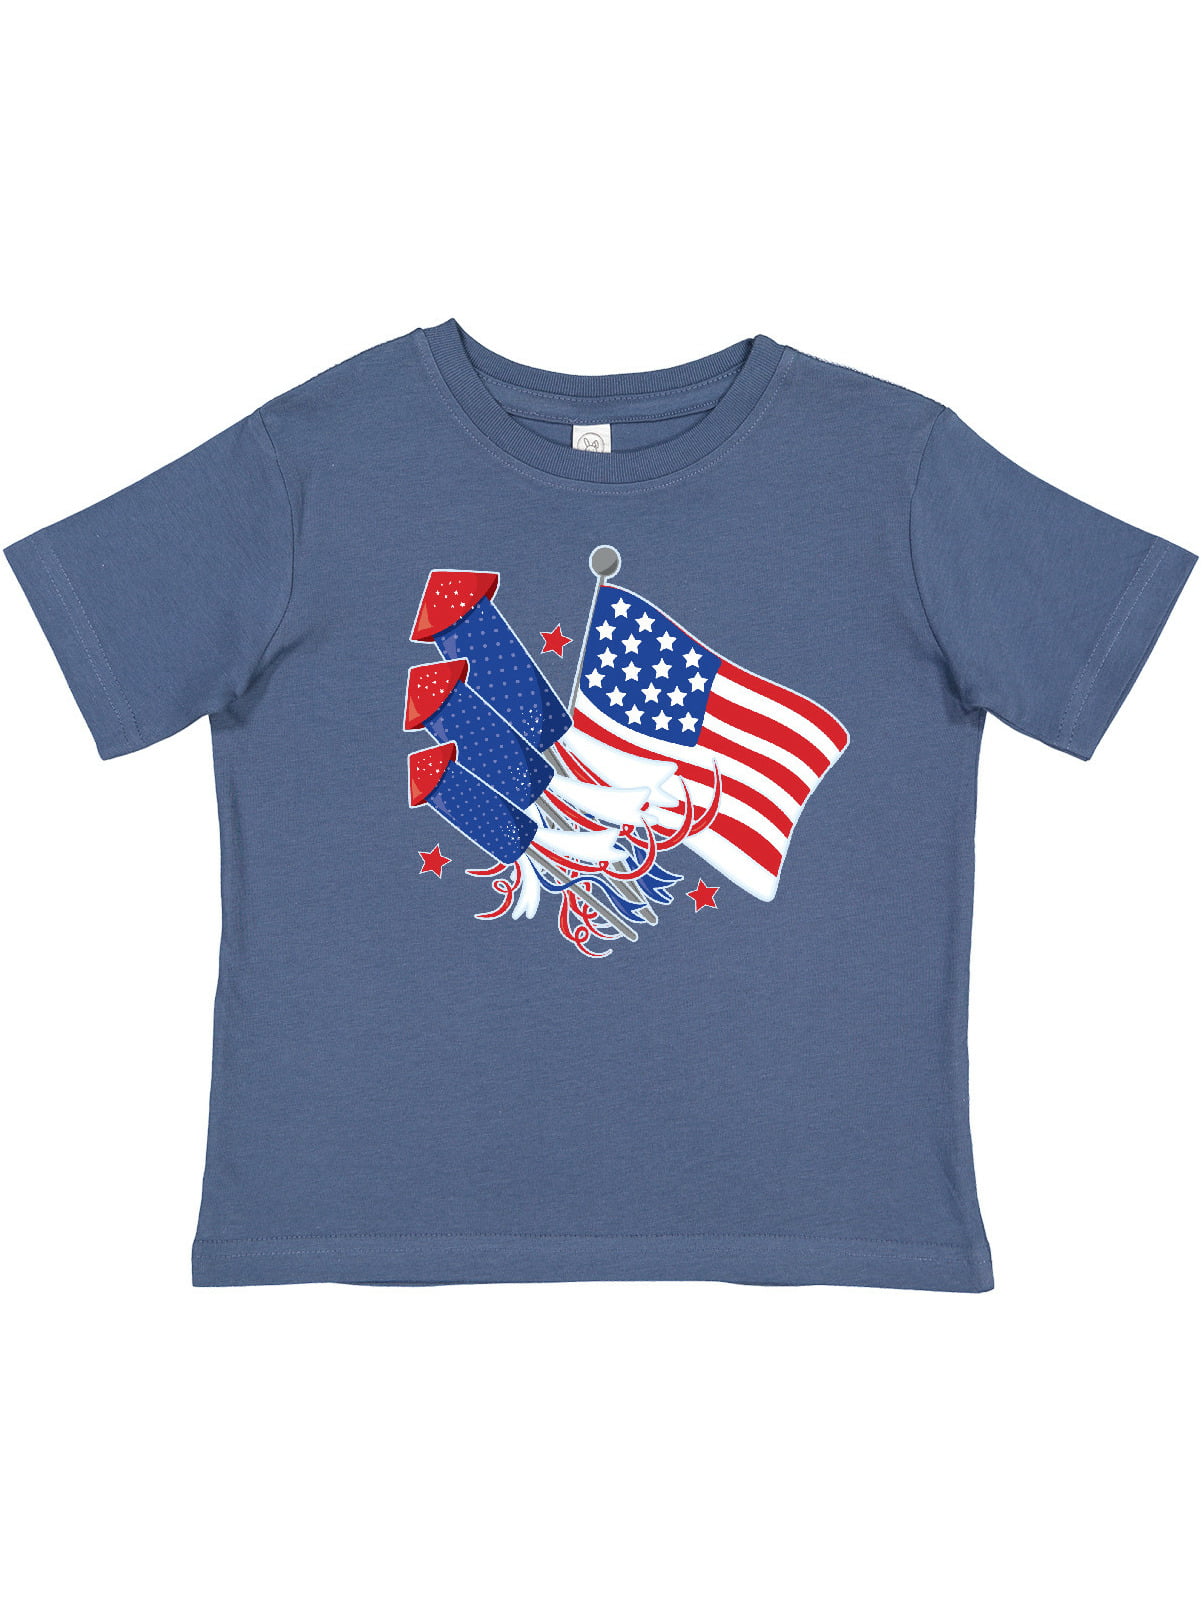 USA shirt United States of Ameowica short-Sleeve Unisex T-Shirt holiday fourth of july